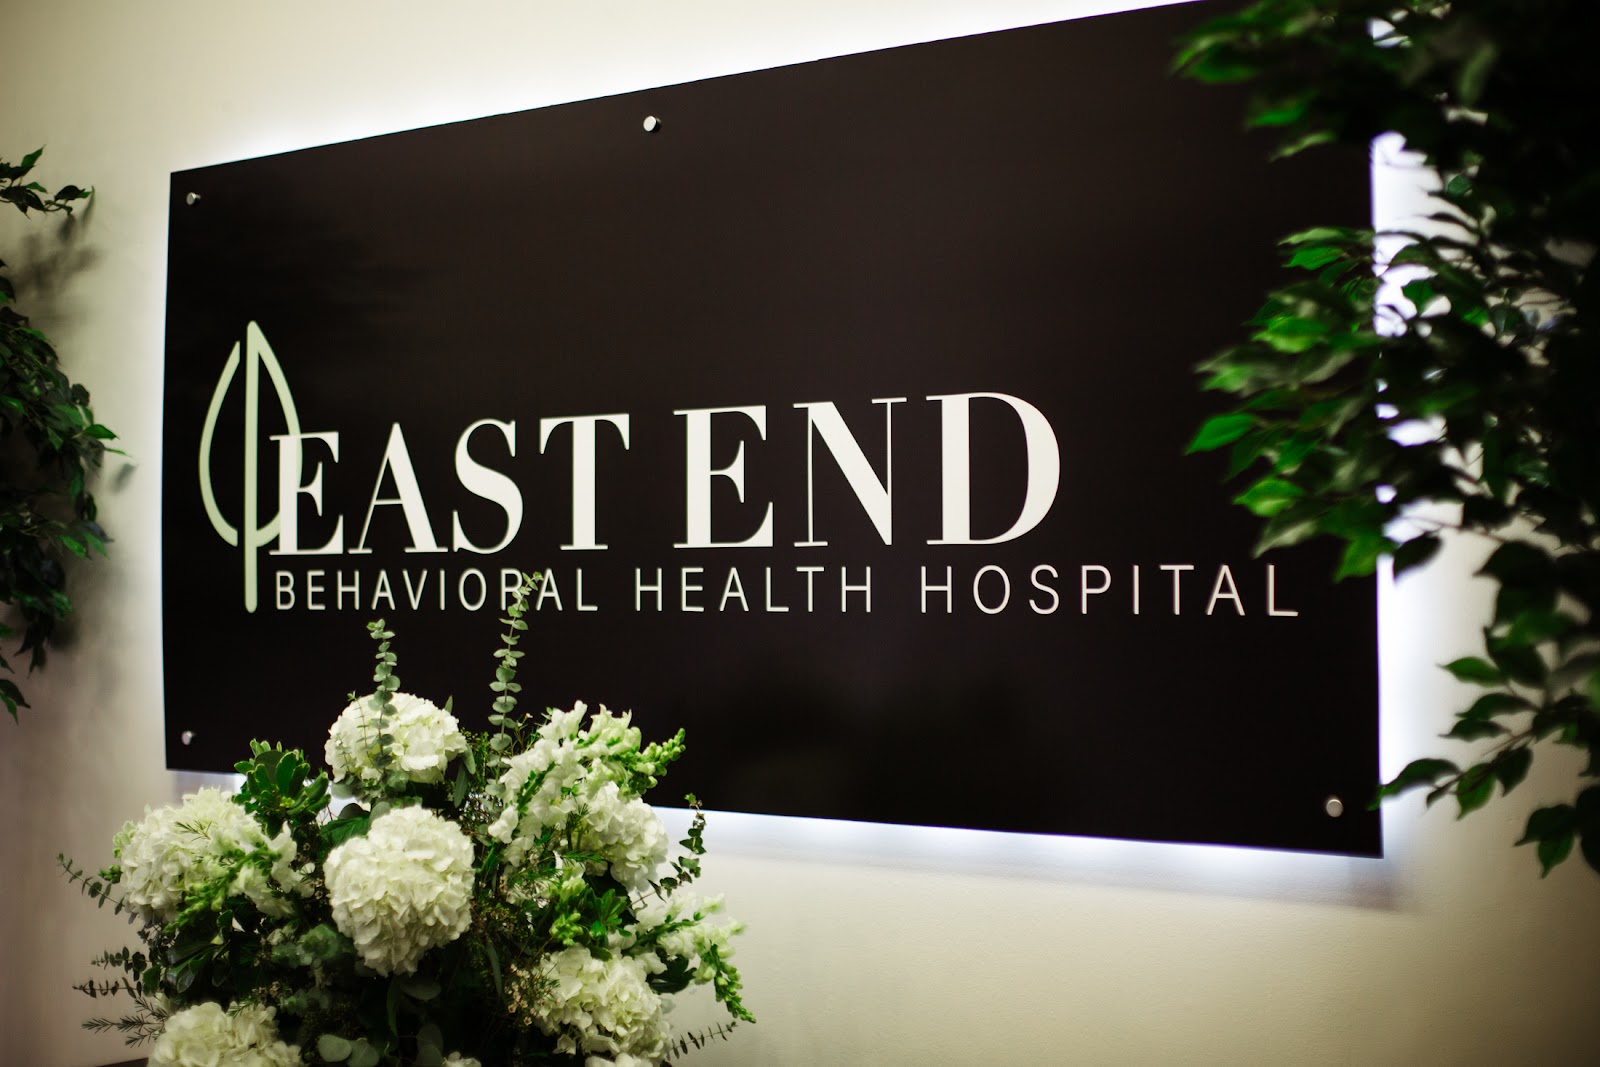 East End Behavioral Health Hospital